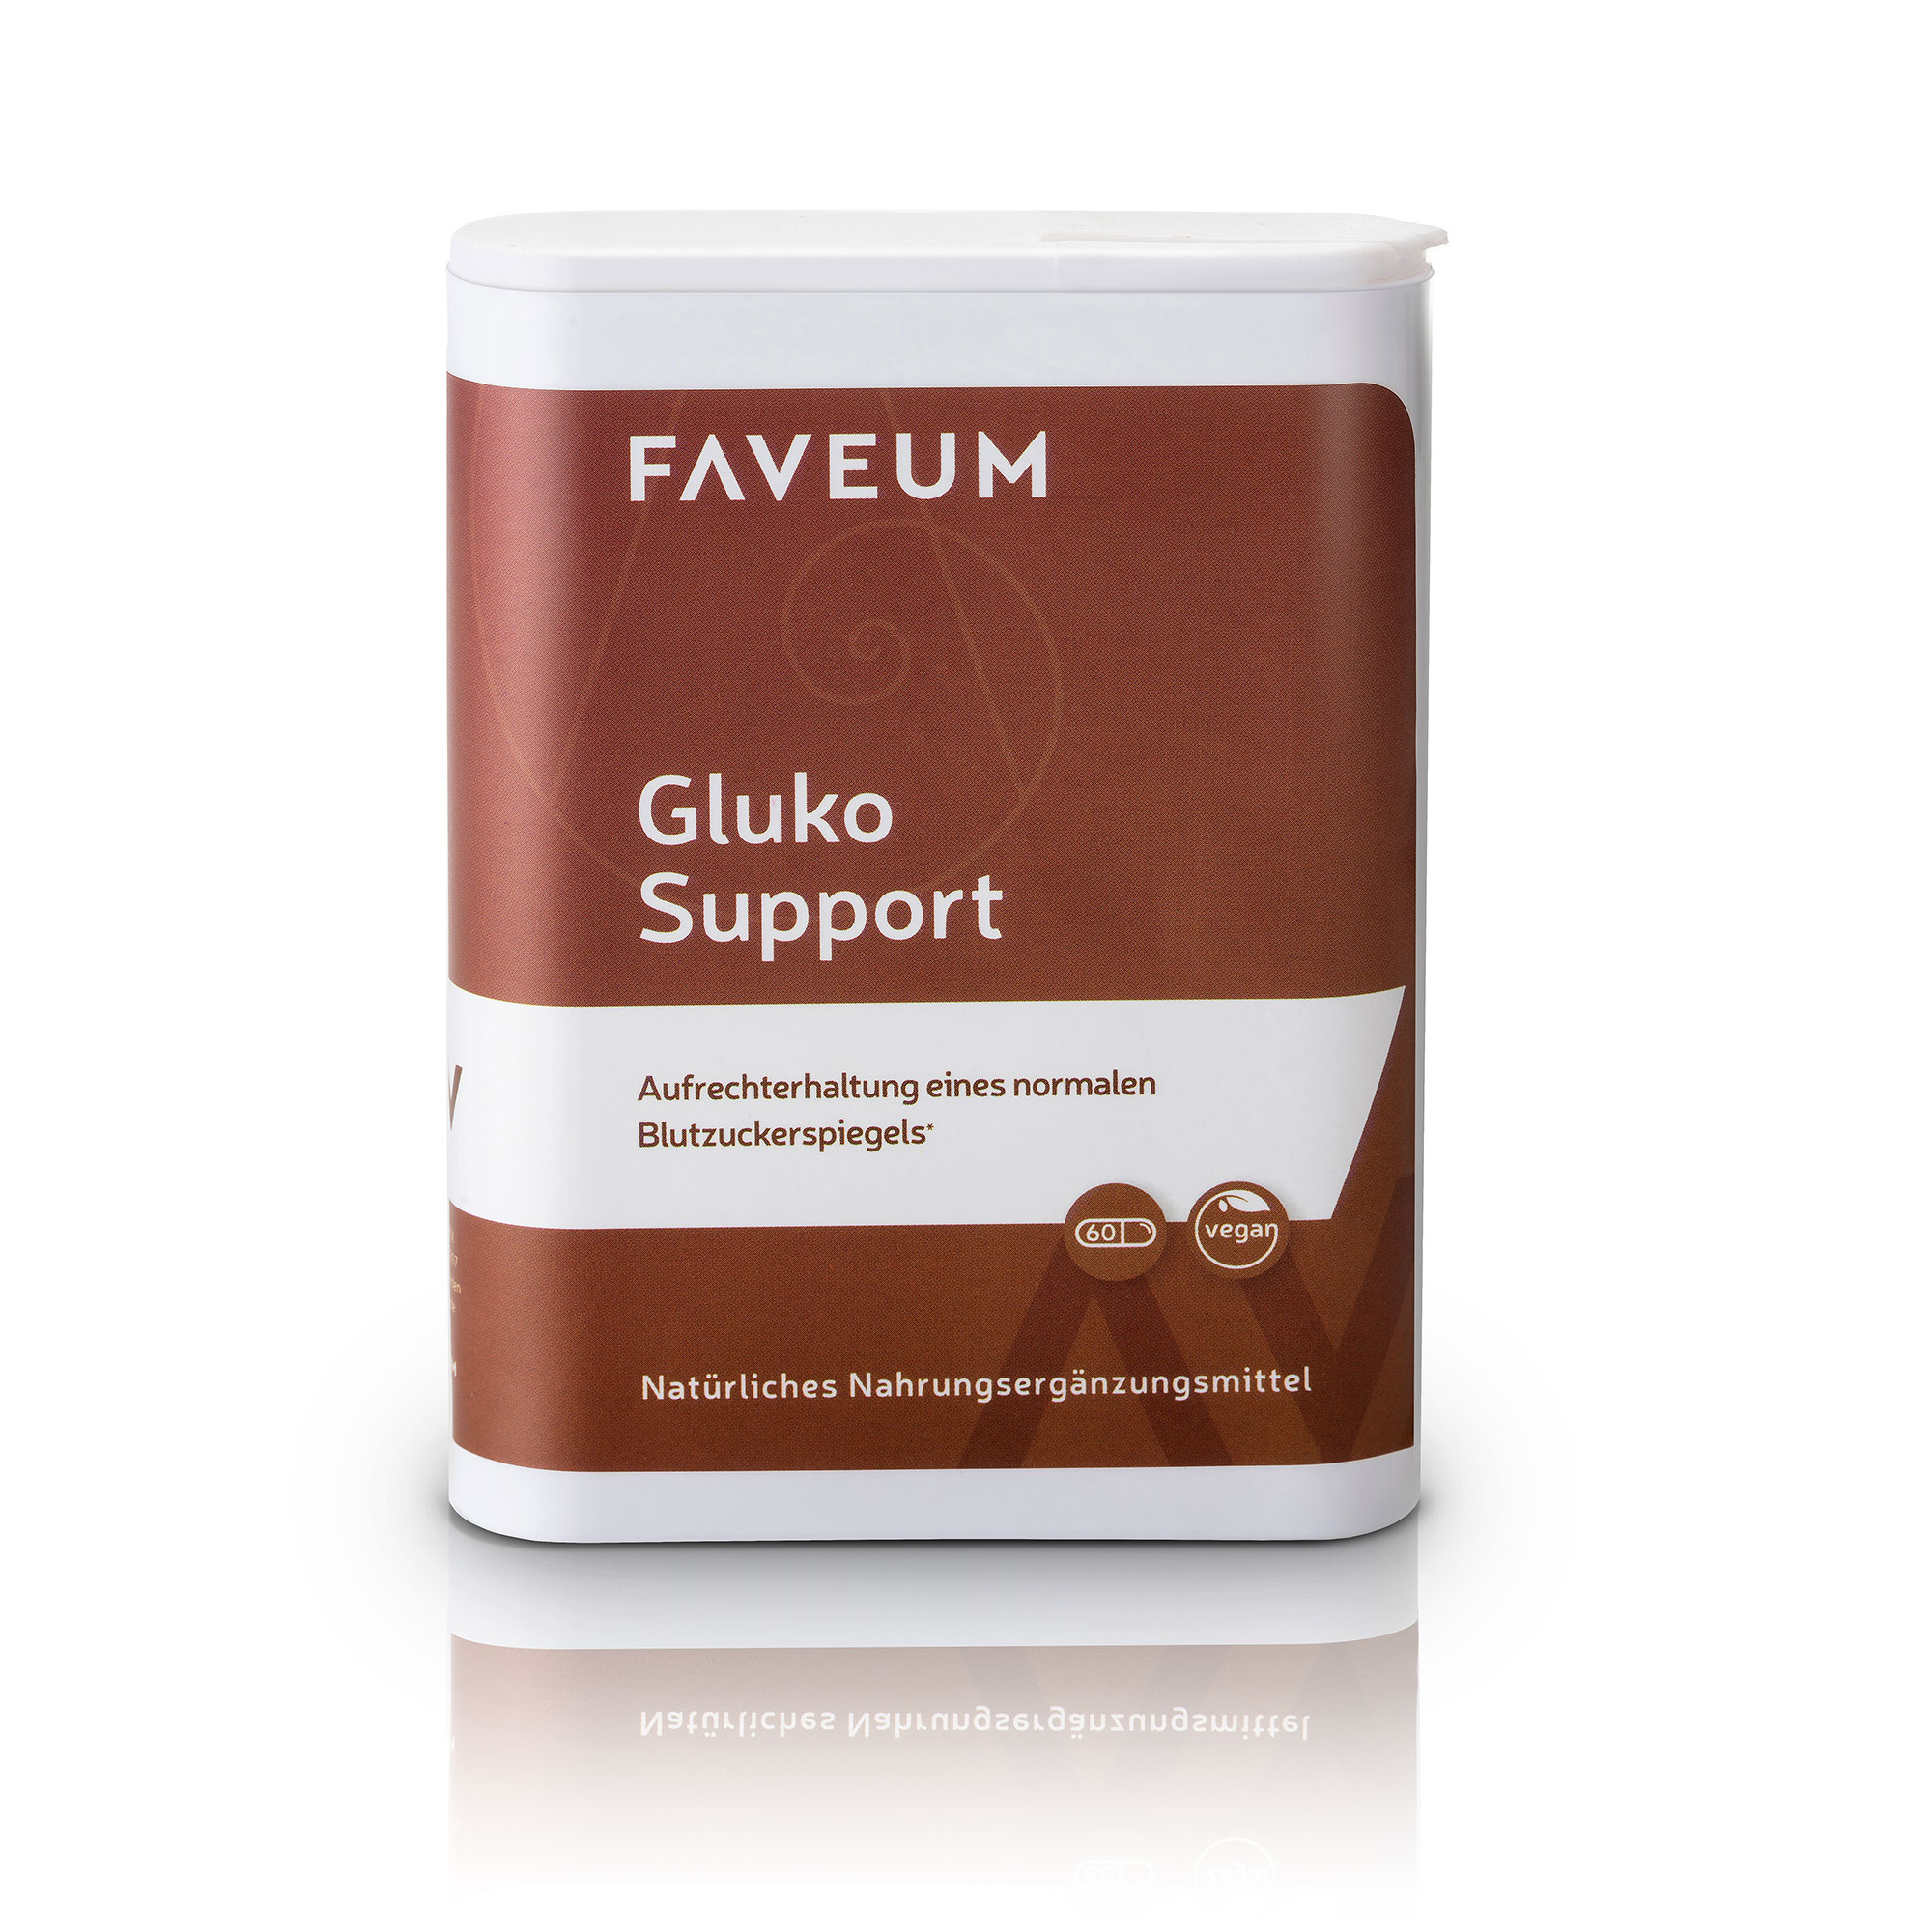 Faveum Gluko Support